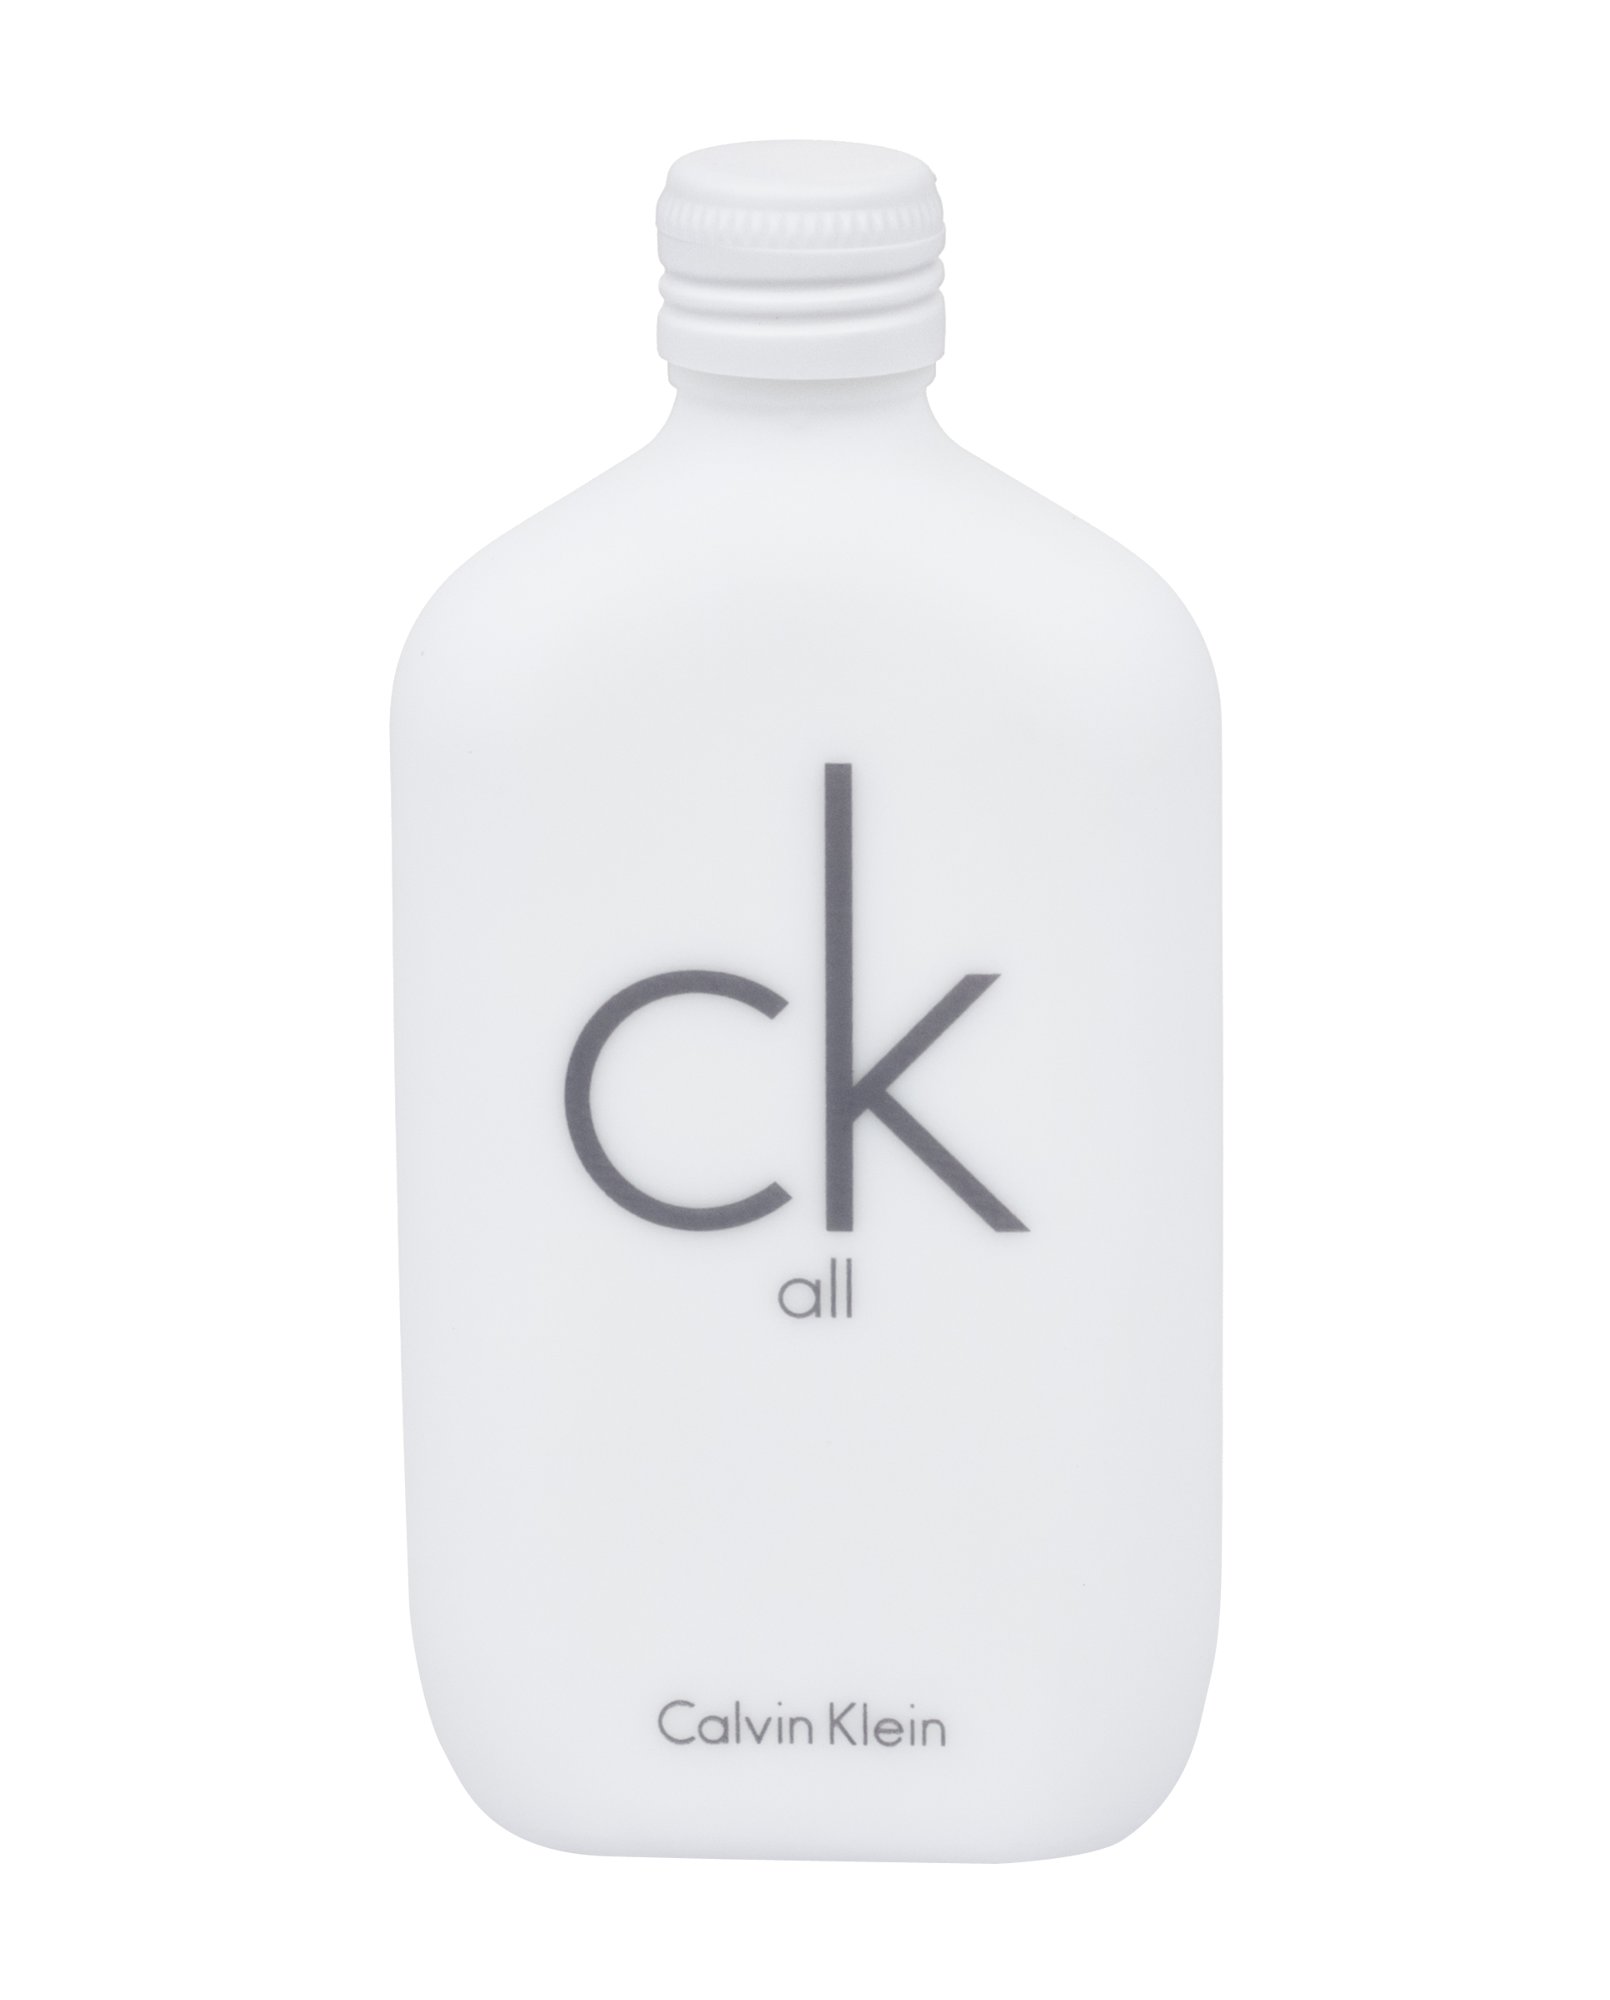 Calvin Klein CK All, Toaletná voda 50ml